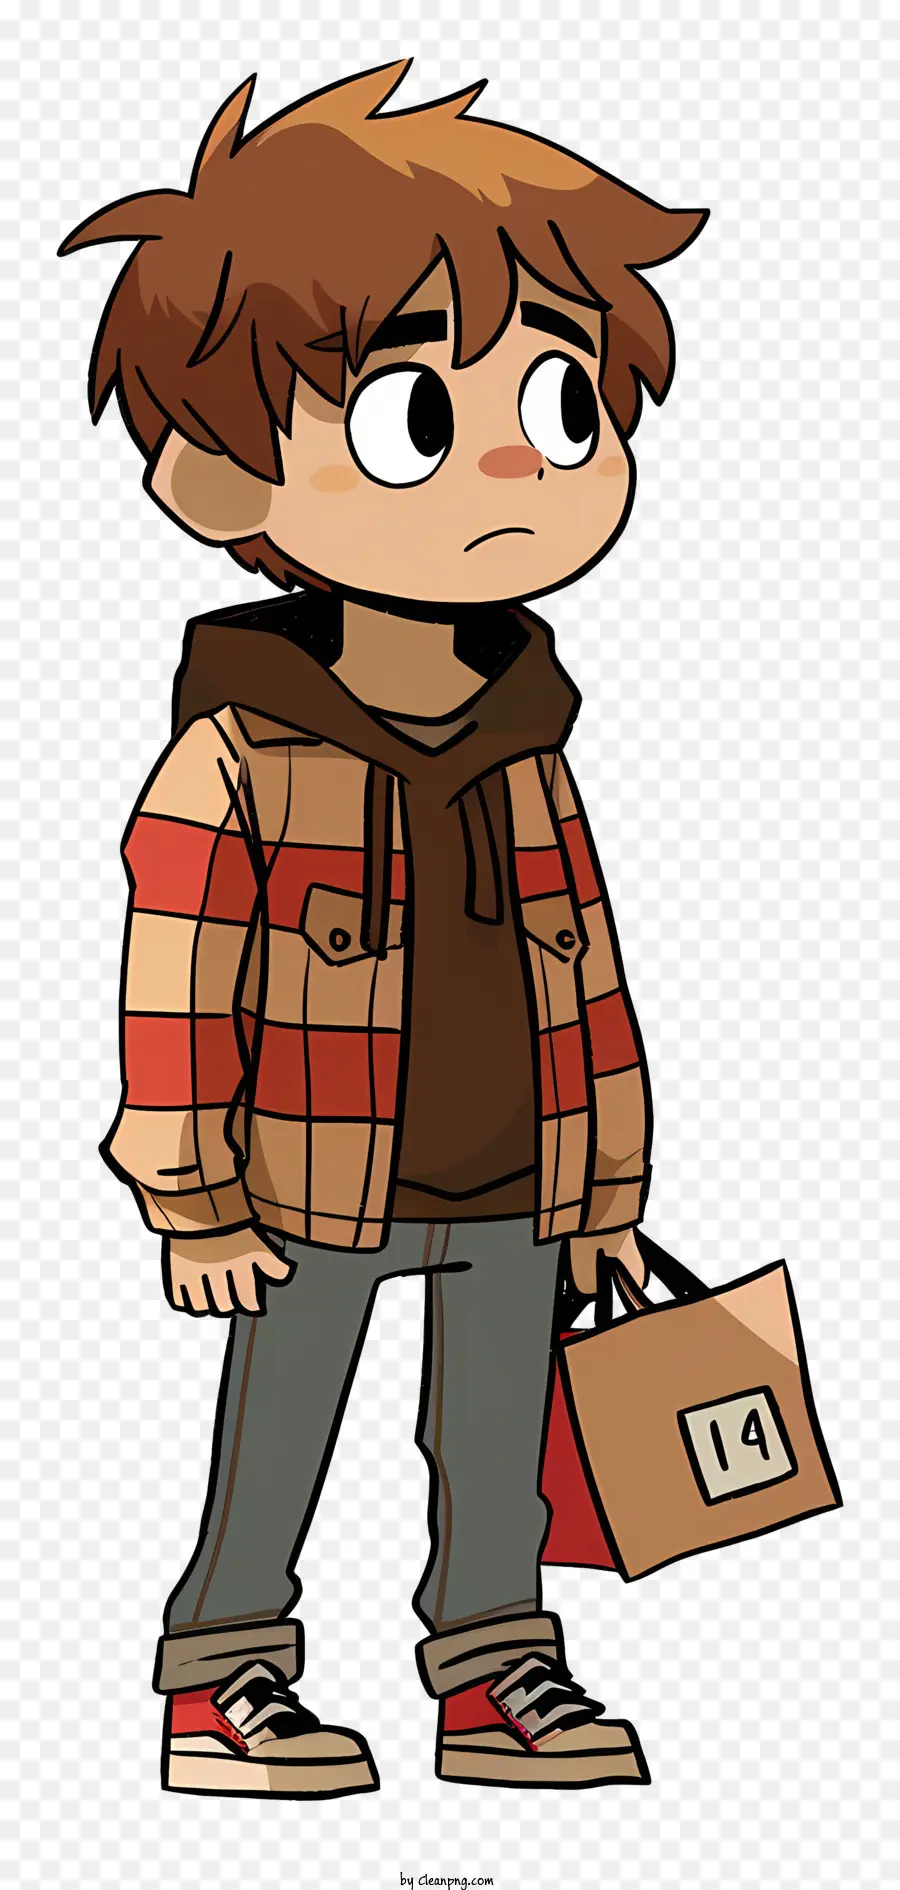 Scott Pilgrim Cartoon Junge braune Jacke rotes Hemd graue Hosen - Cartoon Boy in brauner Jacke mit Kisten